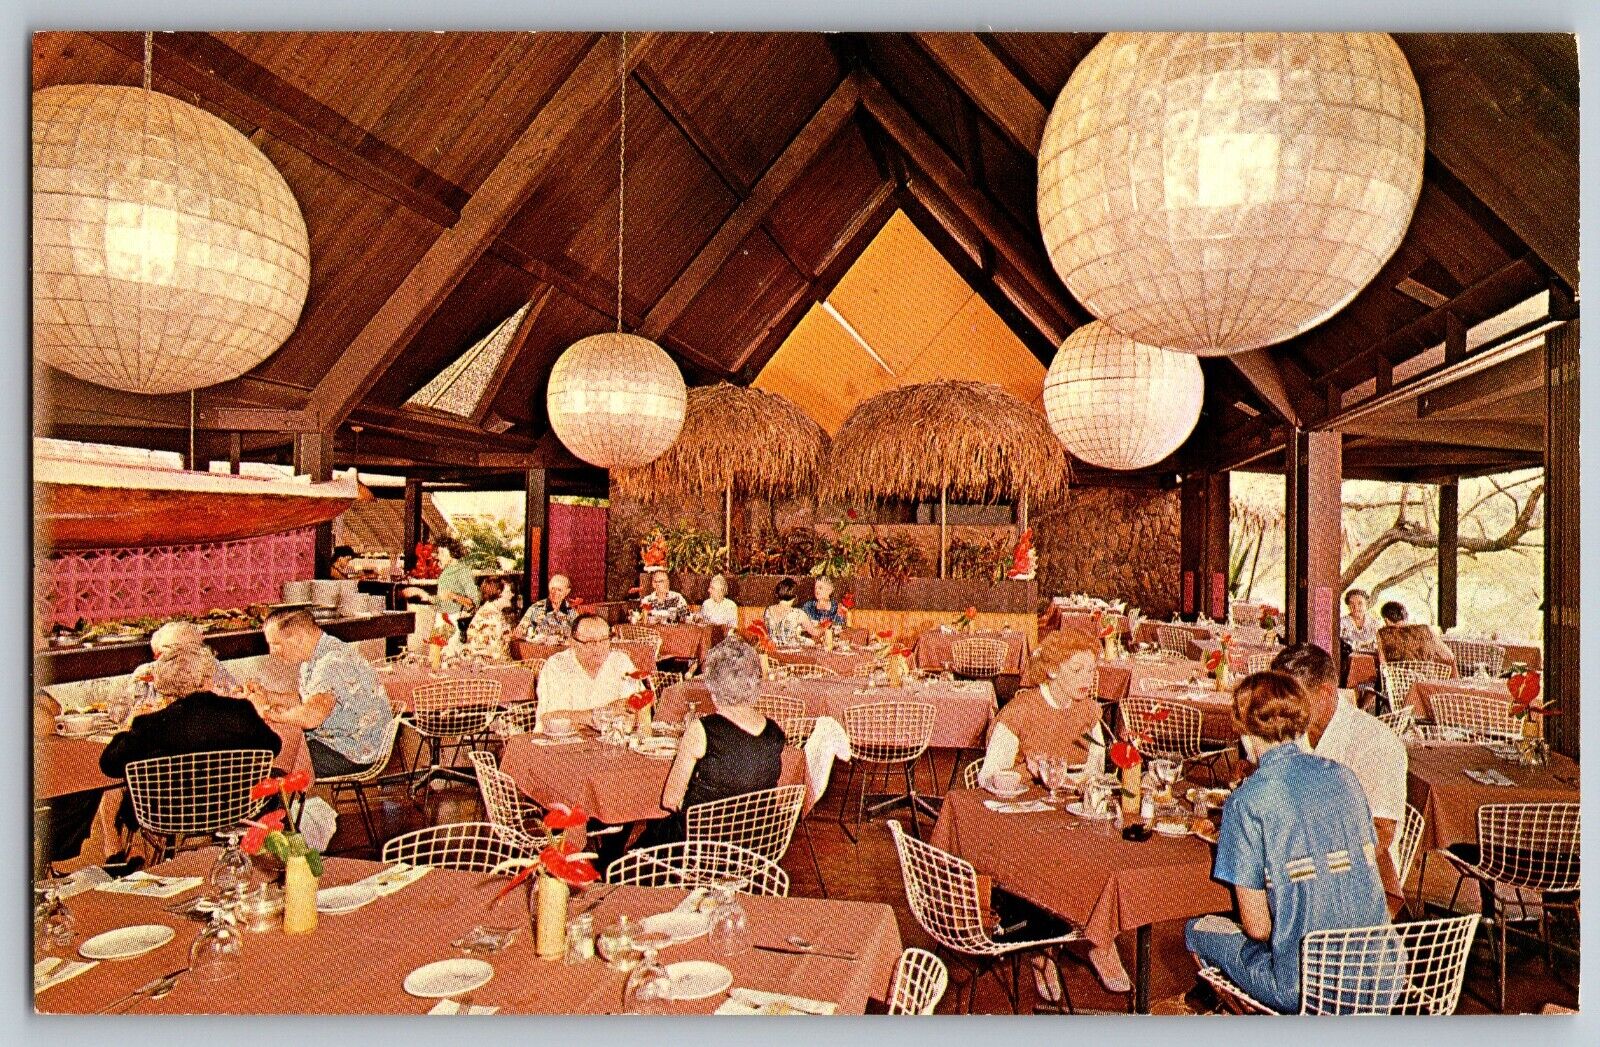 Hawaii HI - Dining Room - Kauai Surf Hotel - Vintage Postcard - Unposted